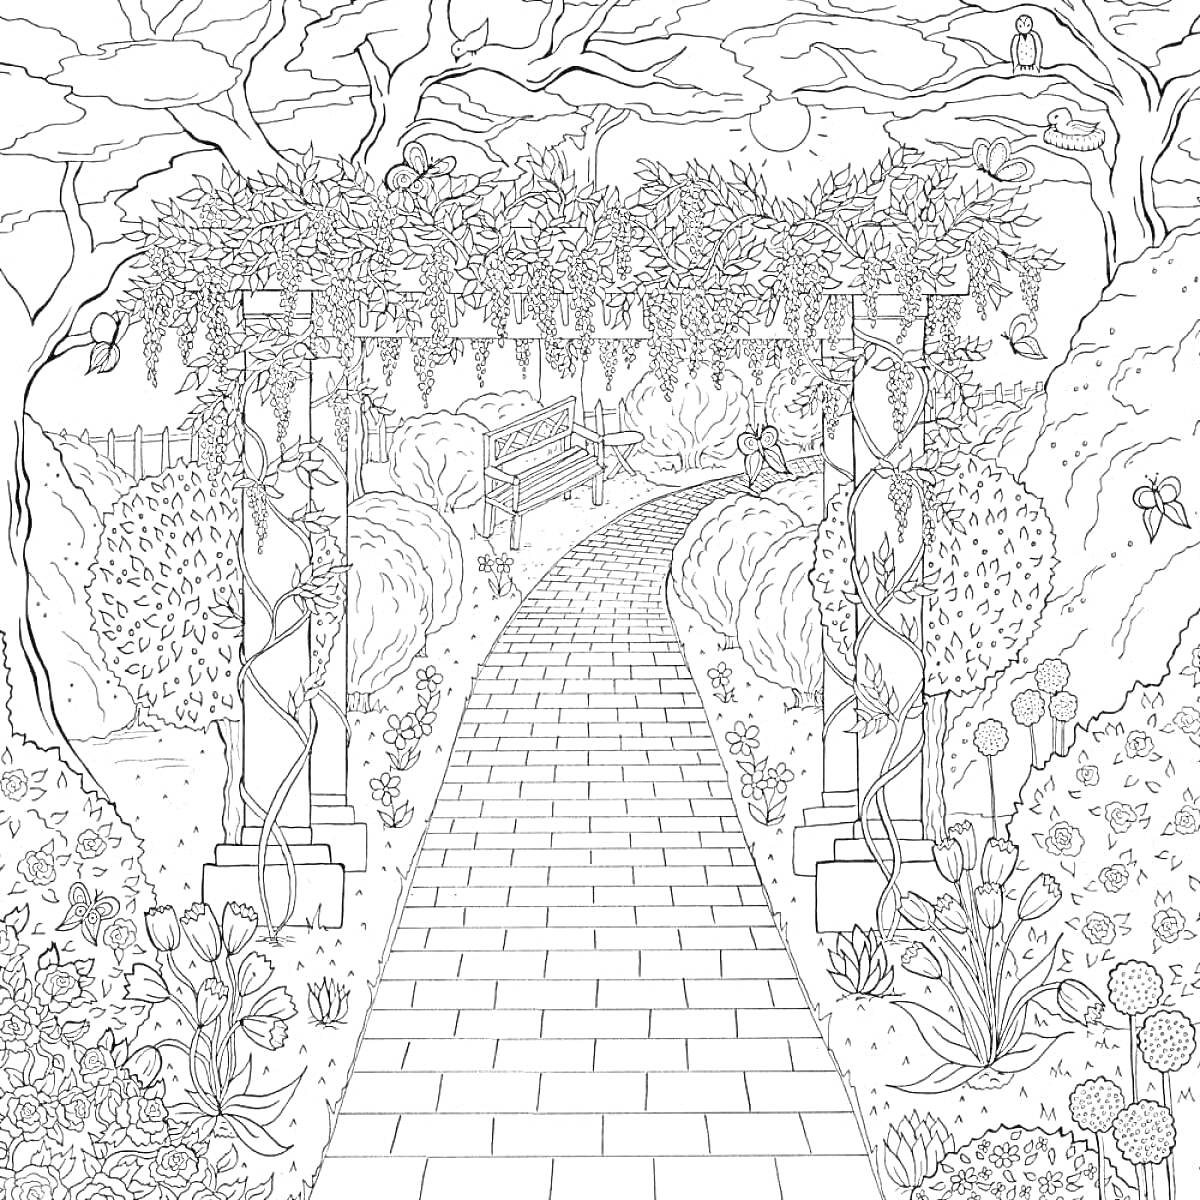 Раскраска Садовая аллея с аркой, скамейкой и окружением из деревьев и кустарников